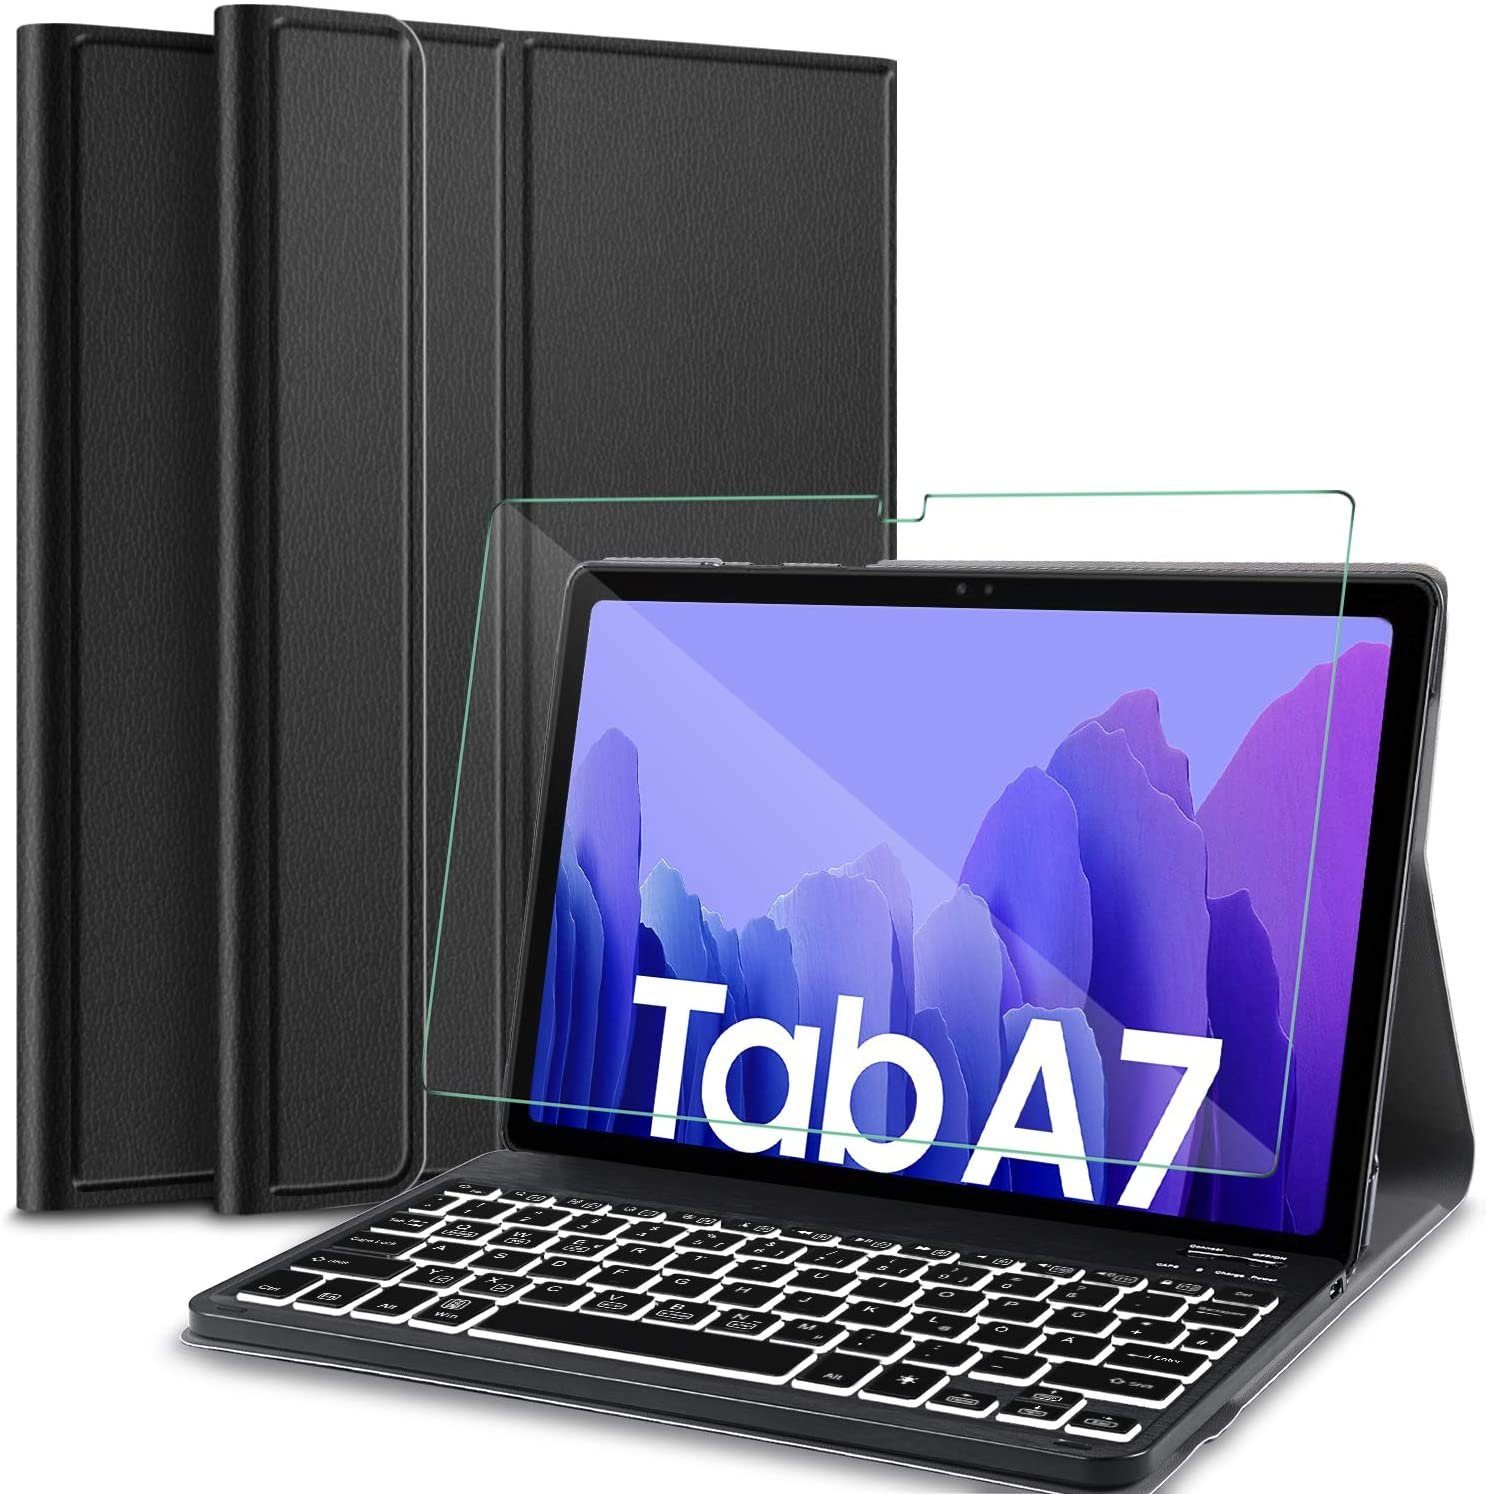 IVSO »Tastatur Kompatibel mit Samsung Galaxy Tab A7 10.4 2020, mit  Panzerglas, [QWERTZ Deutsches],« Tablet-Tastatur (Abnehmbar Beleuchtete  Tastatur Hülle Kompatibel mit Samsung Galaxy Tab A7 T505/T500/T507,  Schwarz) online kaufen | OTTO